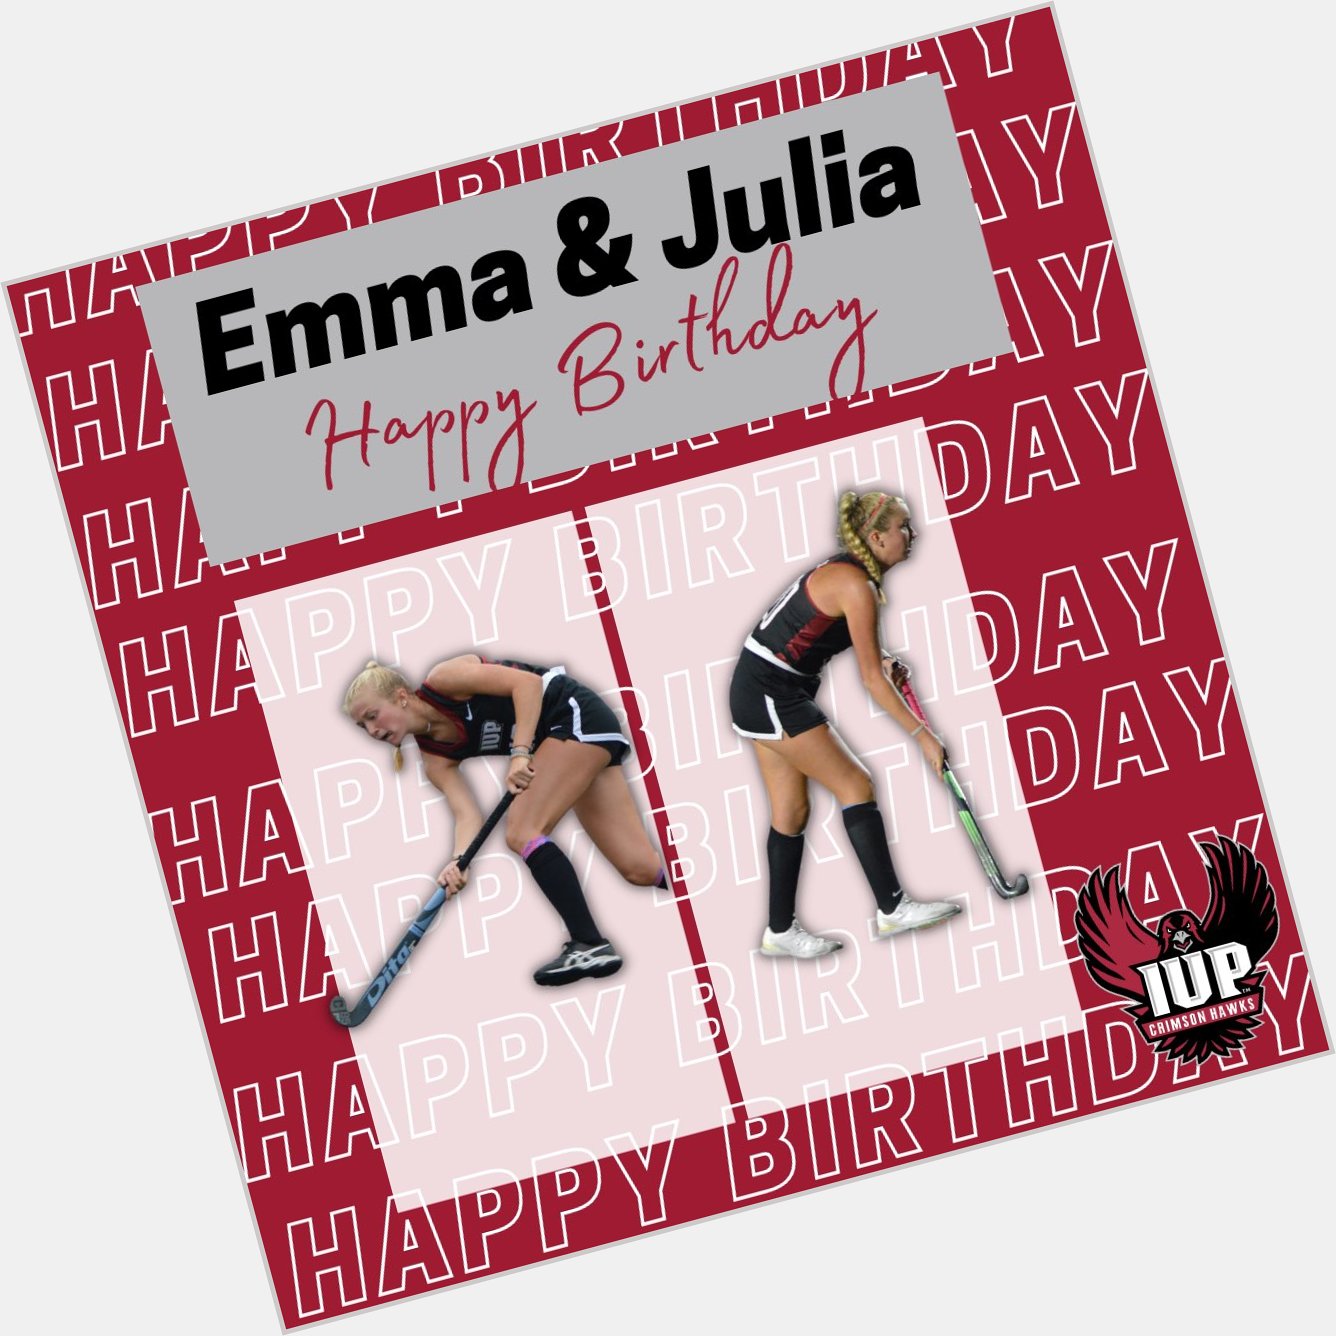 Wishing a Happy Birthday to Emma Wilhelm & Julia Davis   